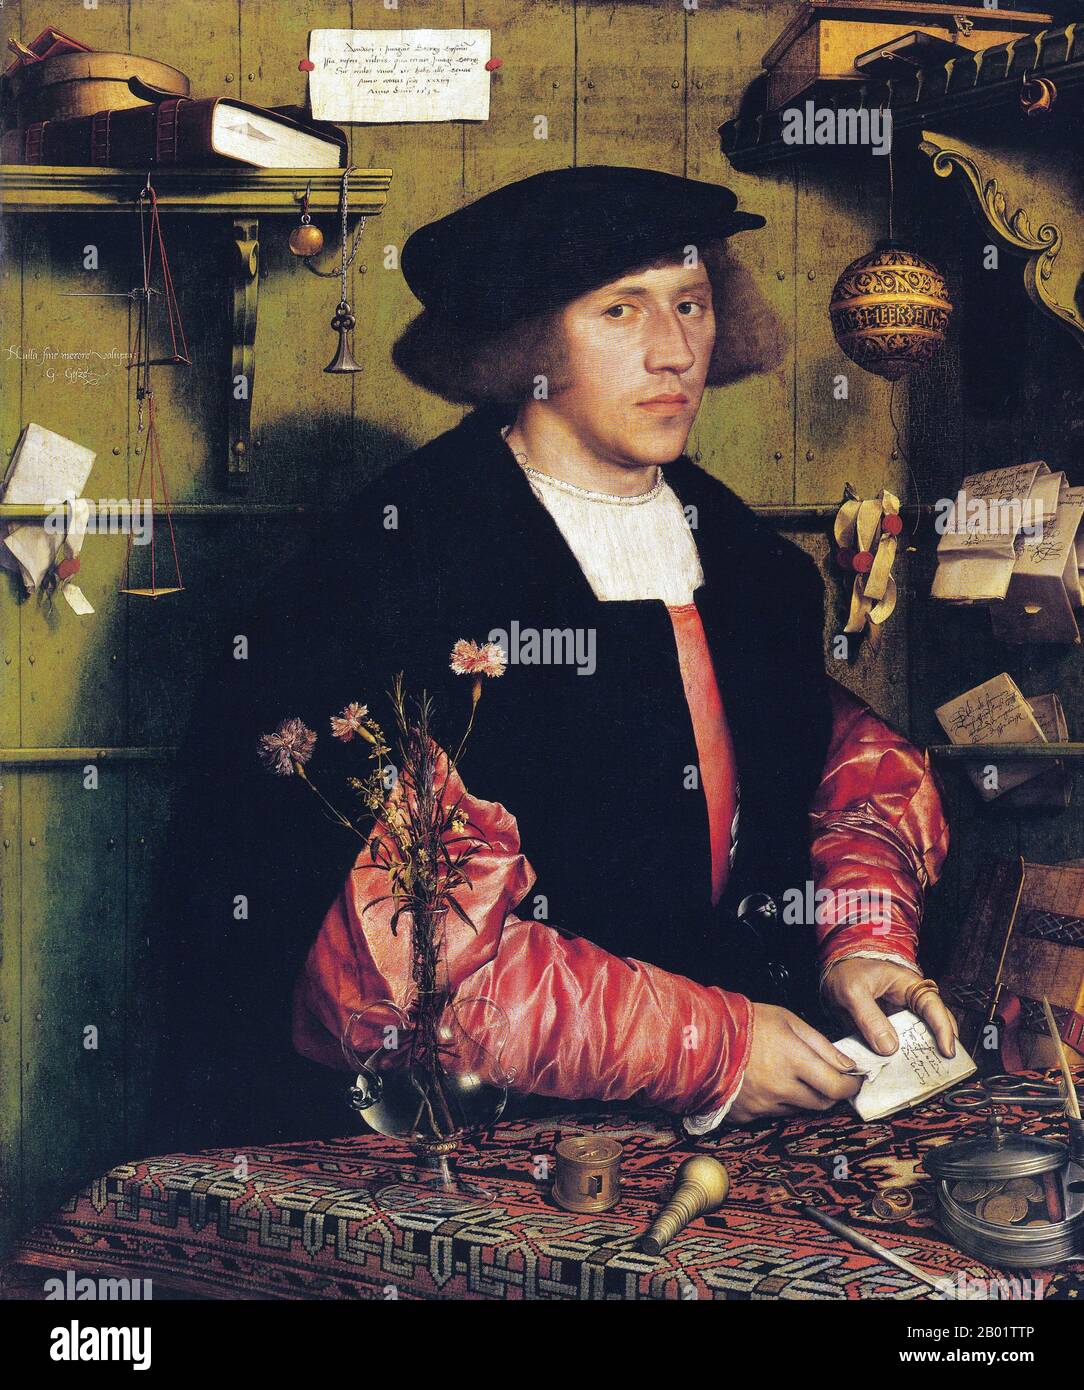 Deutschland: Der Kaufmann Georg Gisze. Öl auf Holzgemälde von Hans Holbein dem Jüngeren (1497-1543), um 1532. Hans Holbein der Jüngere war ein deutsch-schweizerischer Maler und Printmacher des Nördlichen Renaissance-Stils, der von vielen als einer der größten Porträtisten des 16. Jahrhunderts angesehen wurde. Zu seinen Werken zählte auch reformatorische Propaganda, religiöse Kunst und Satire, und er war ein einflussreicher Autor der Geschichte des Buchdesigns. Er war auch King’s Painter to Heinrich VIII. Von England, seine Porträts der königlichen Familie und des Adels eine wichtige erhaltene Aufzeichnung des englischen Hofes. Stockfoto